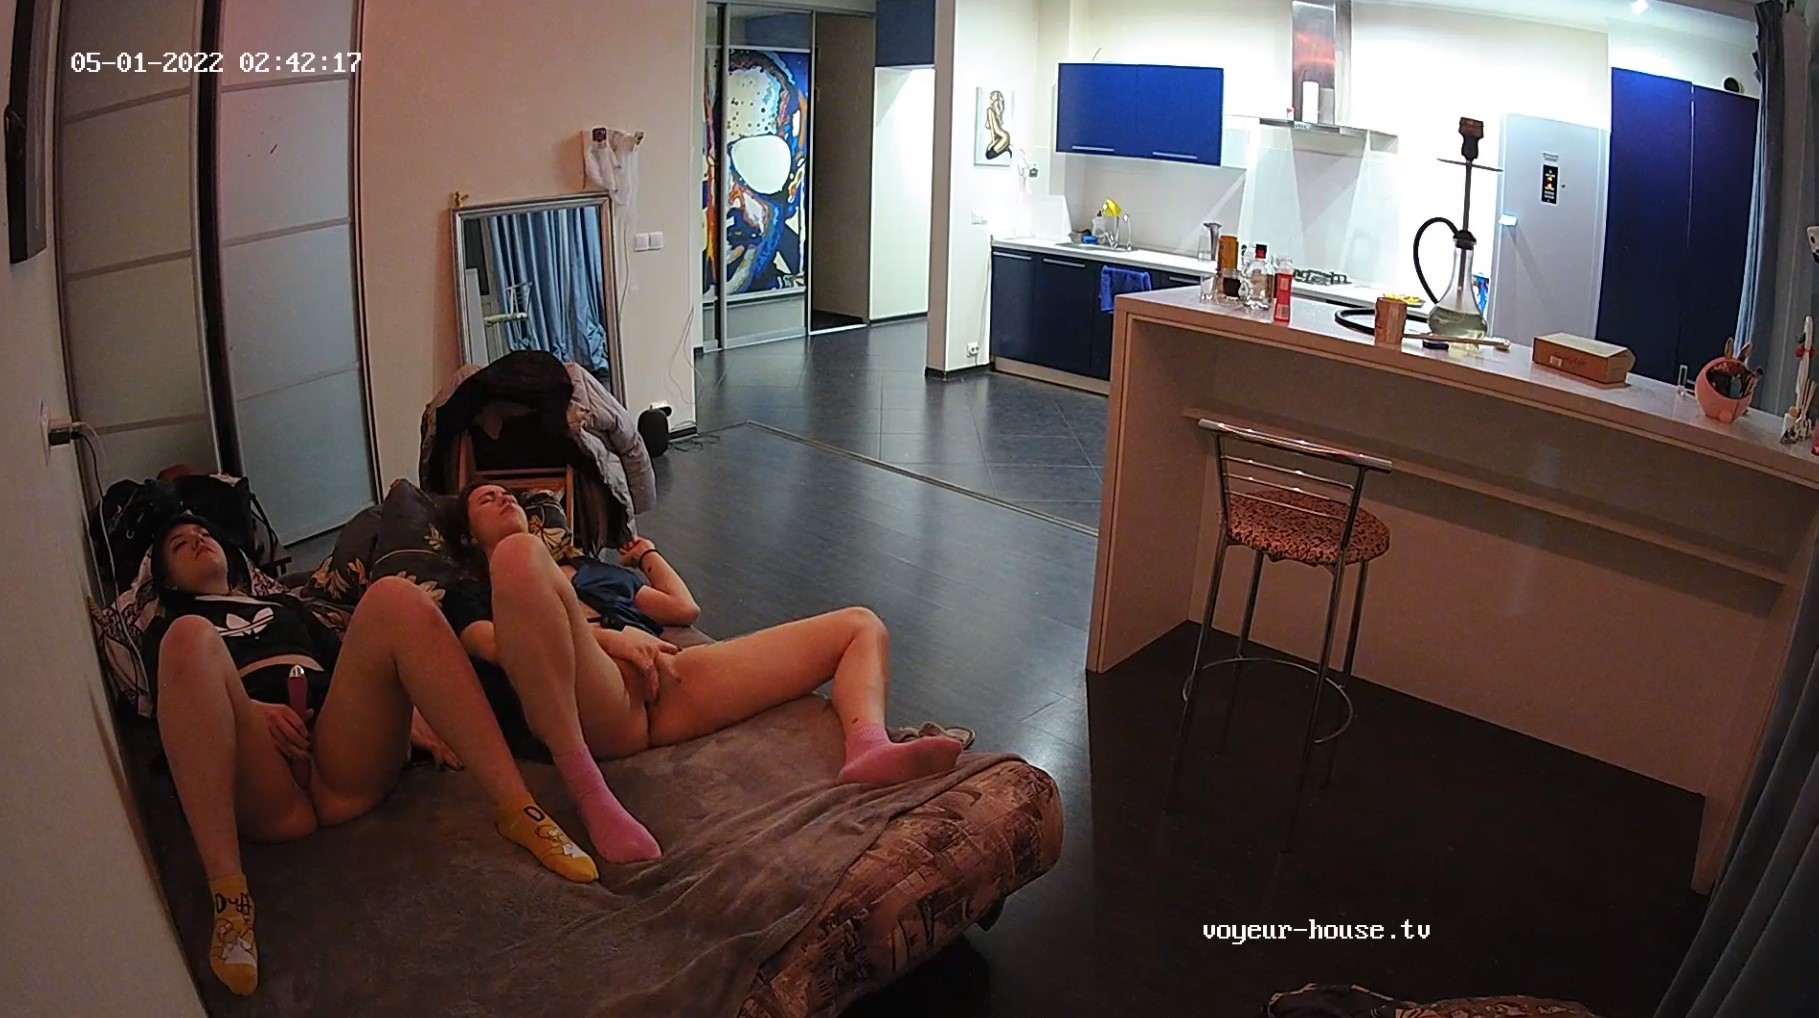 Shana and Elisha vibrator bate on sofa and airing out pussies, May01/22